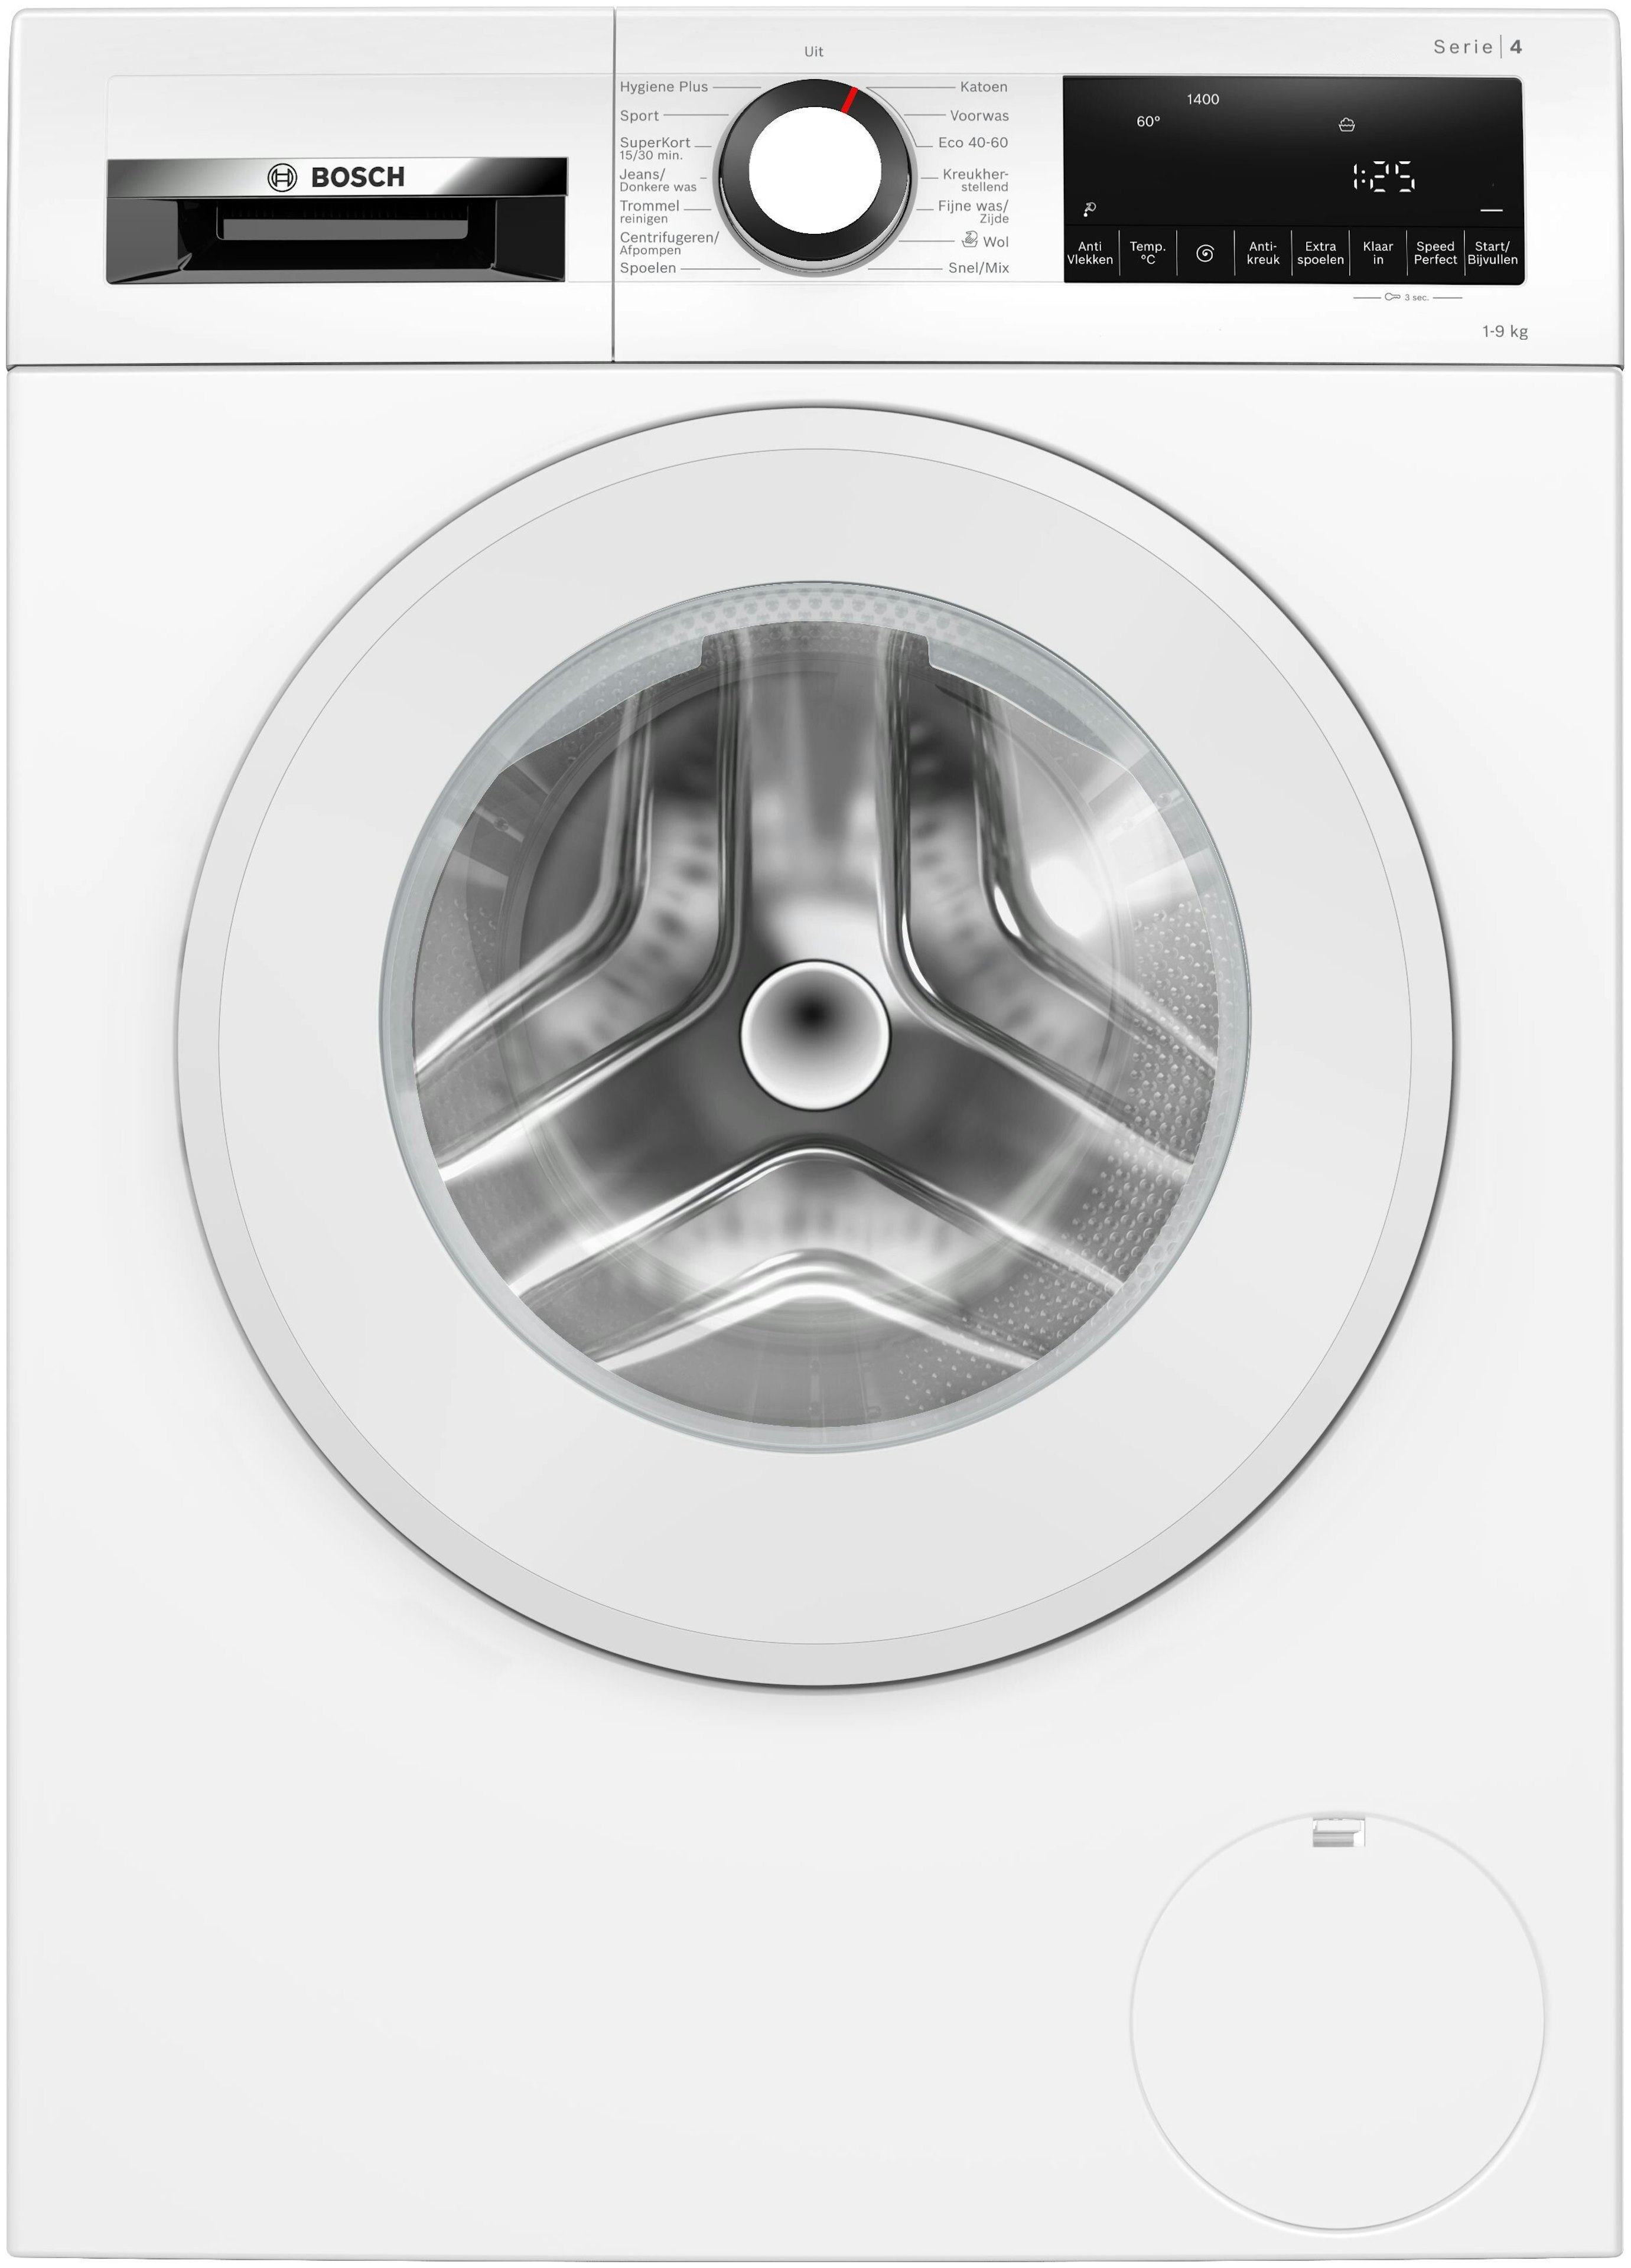 Bosch wasmachine 9 kg - Bemmel & Kroon!